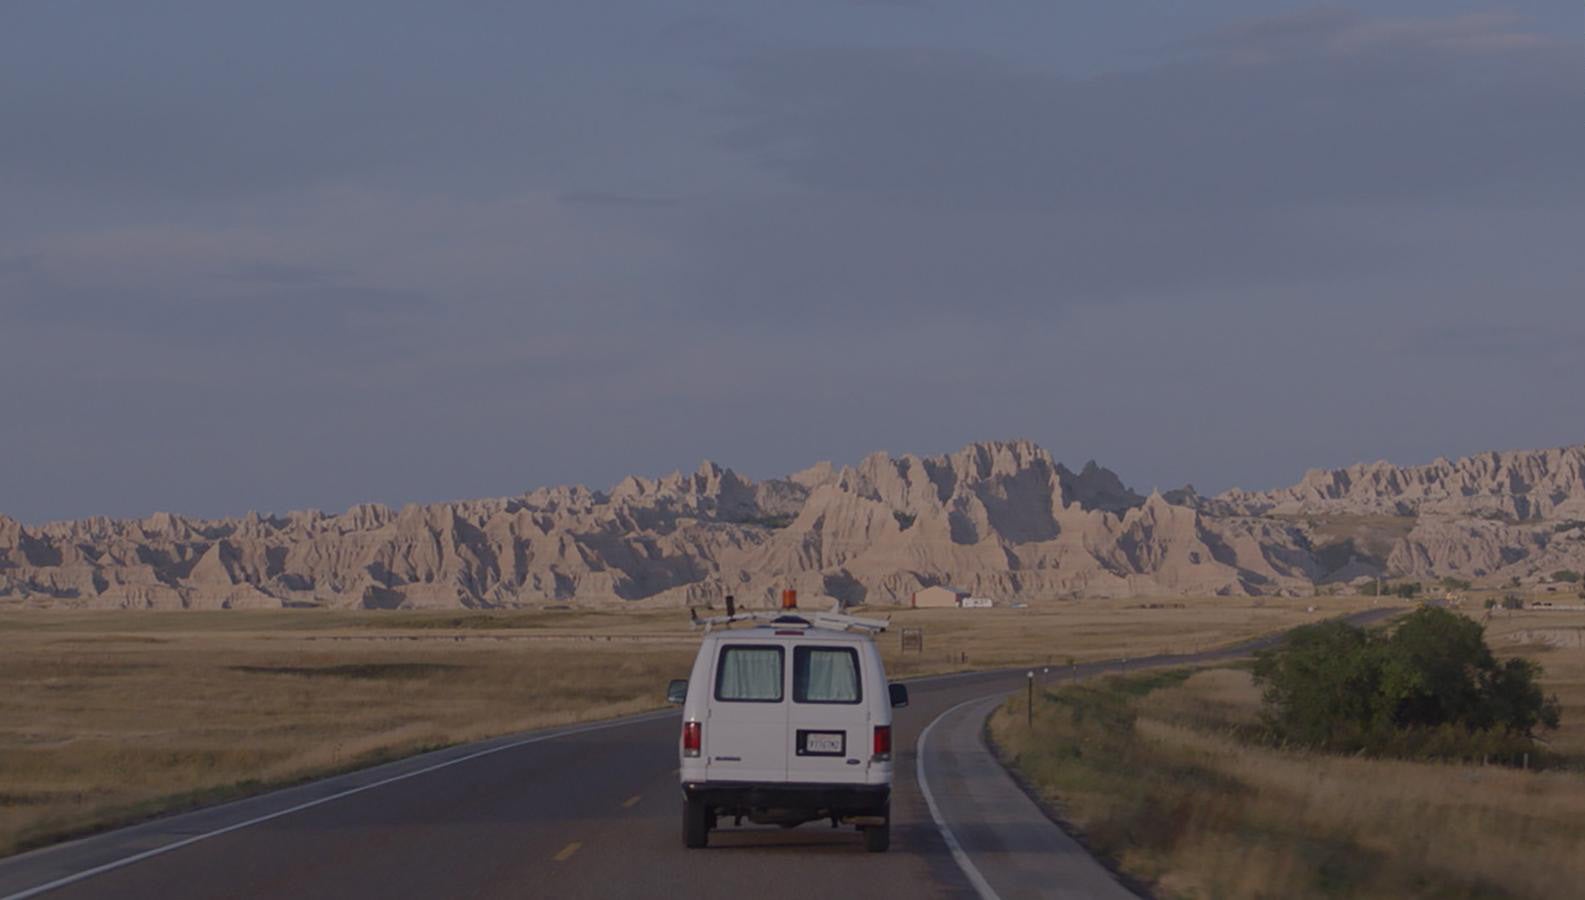 Image of van in desert